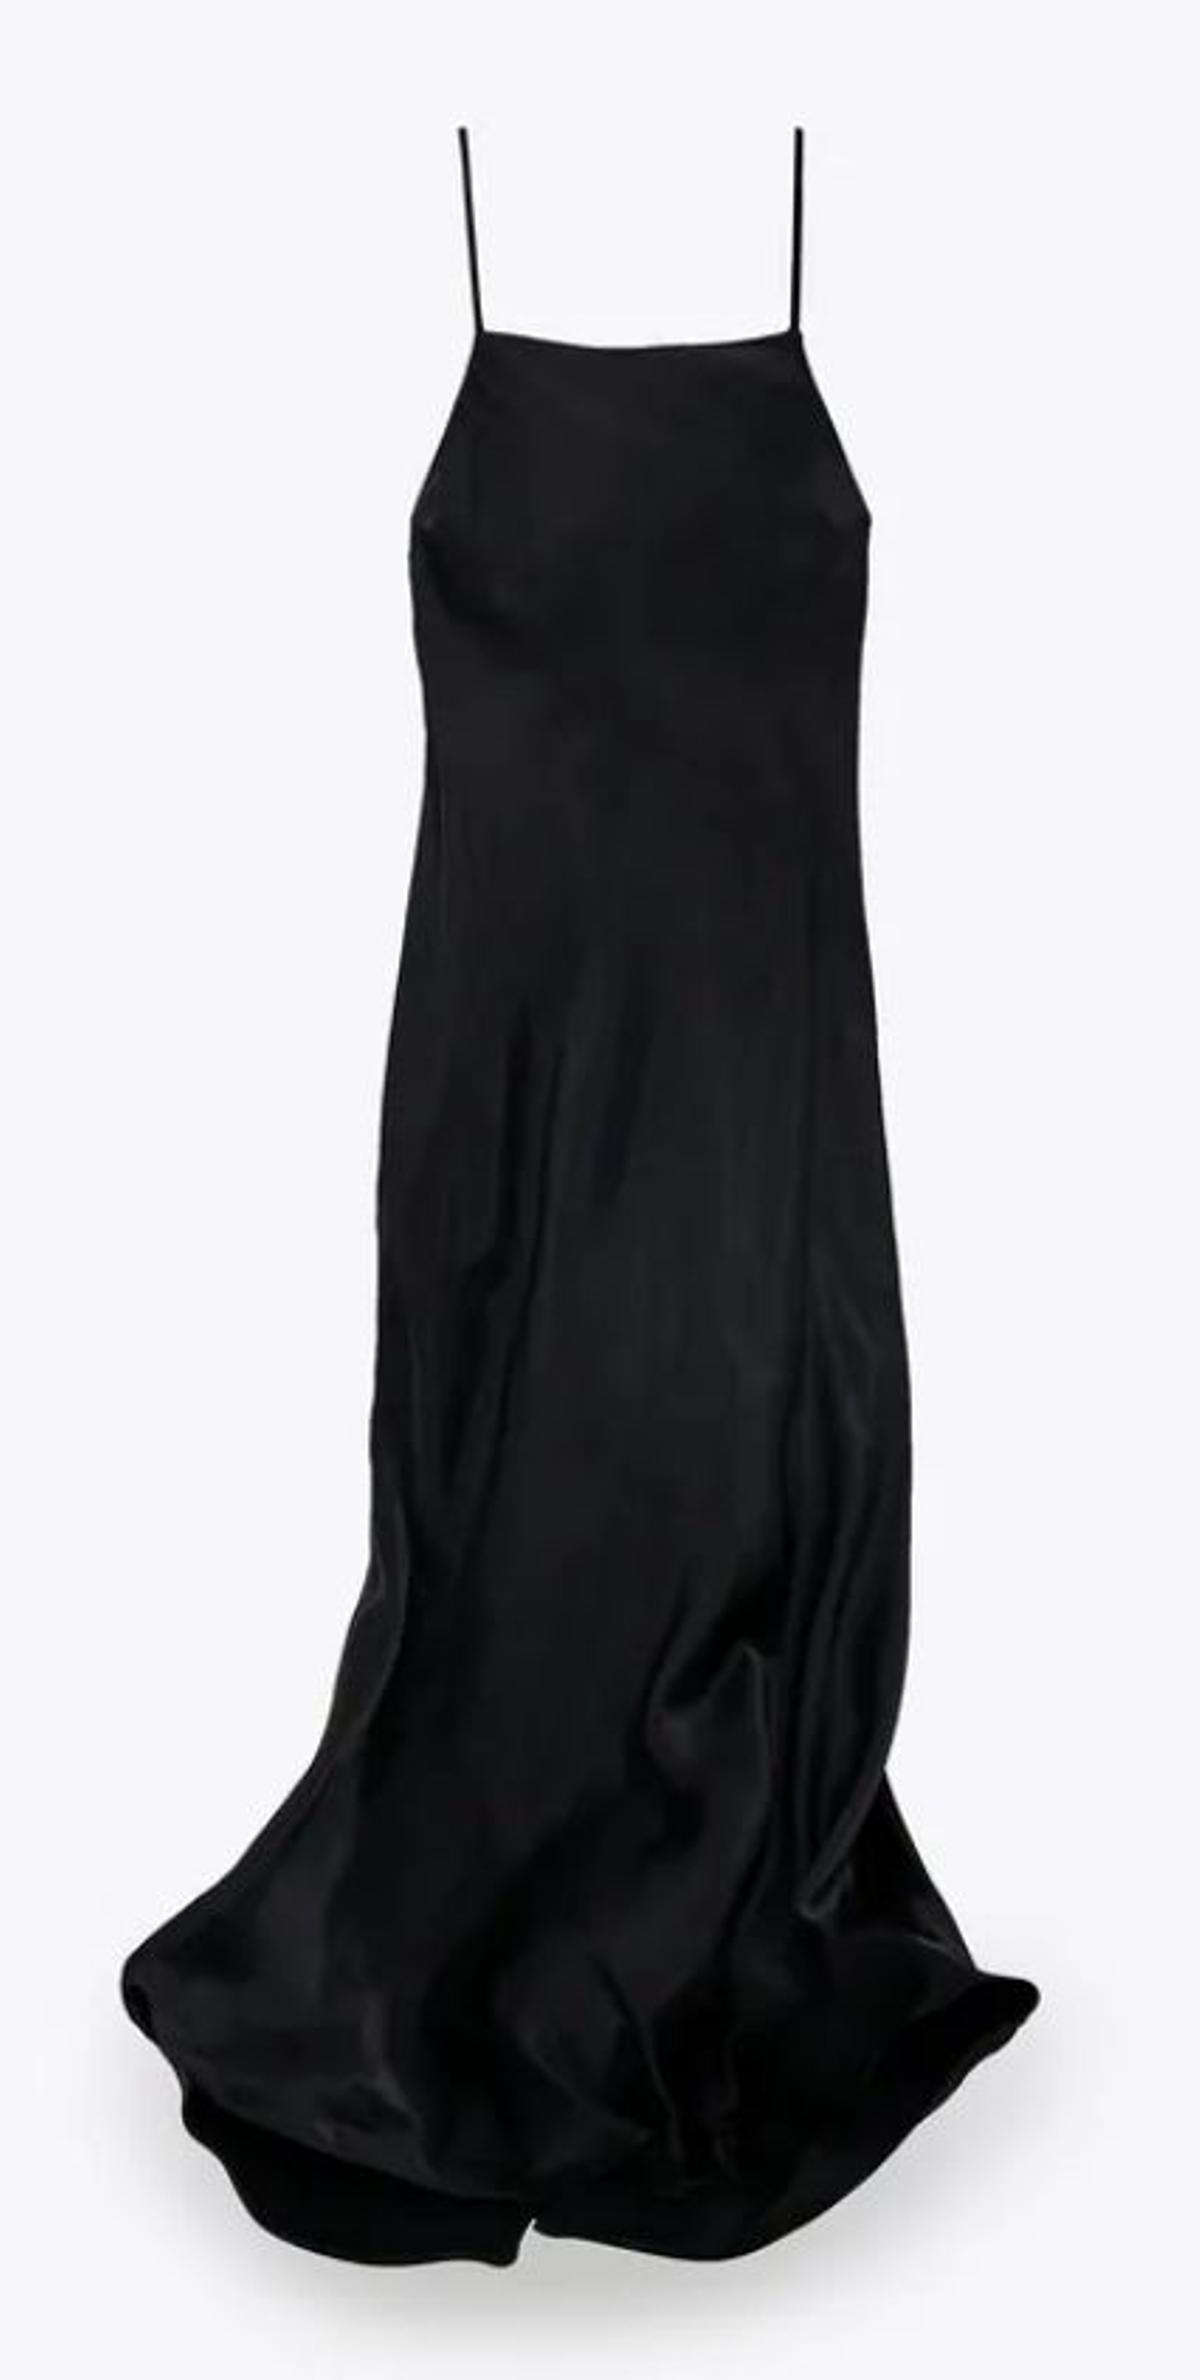 Slip dress noventero de Zara en color negro, escote recto y tirantes finos